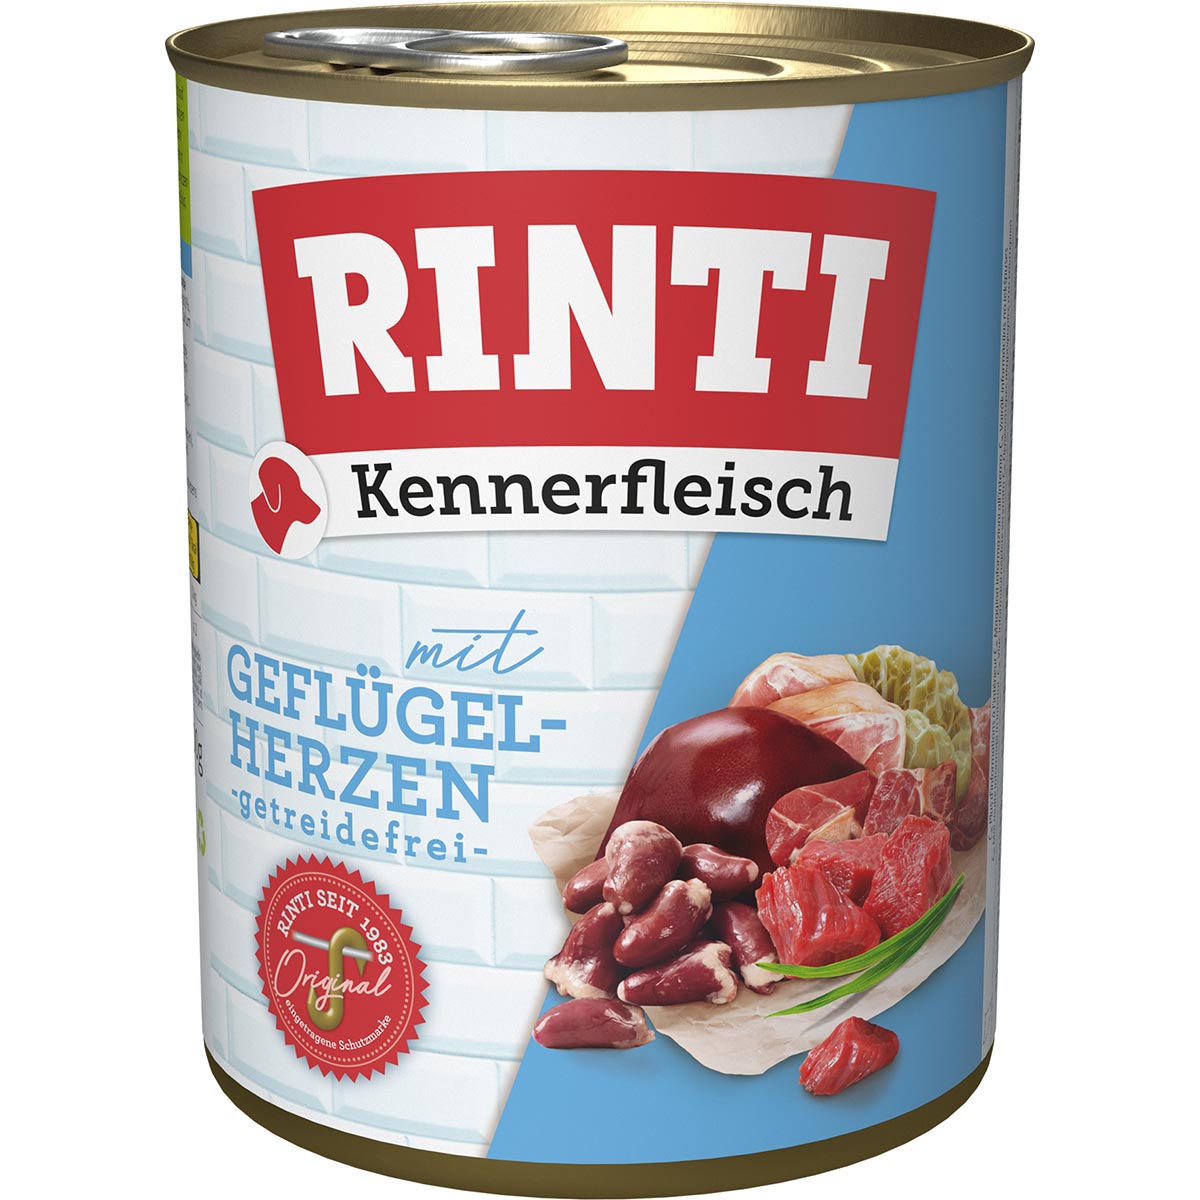 Rinti Kennerfleisch Geflügelherzen 24x800g von Rinti